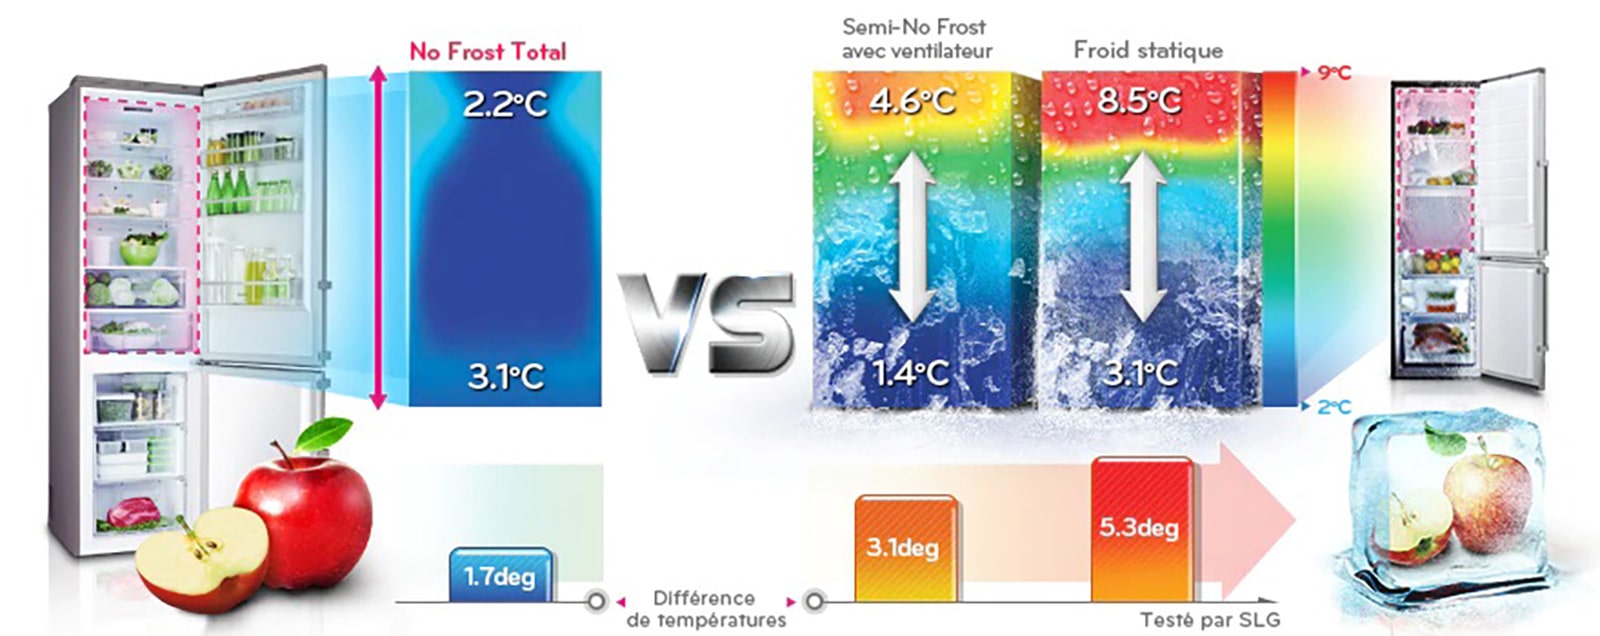 Différence de température avec Total No Frost